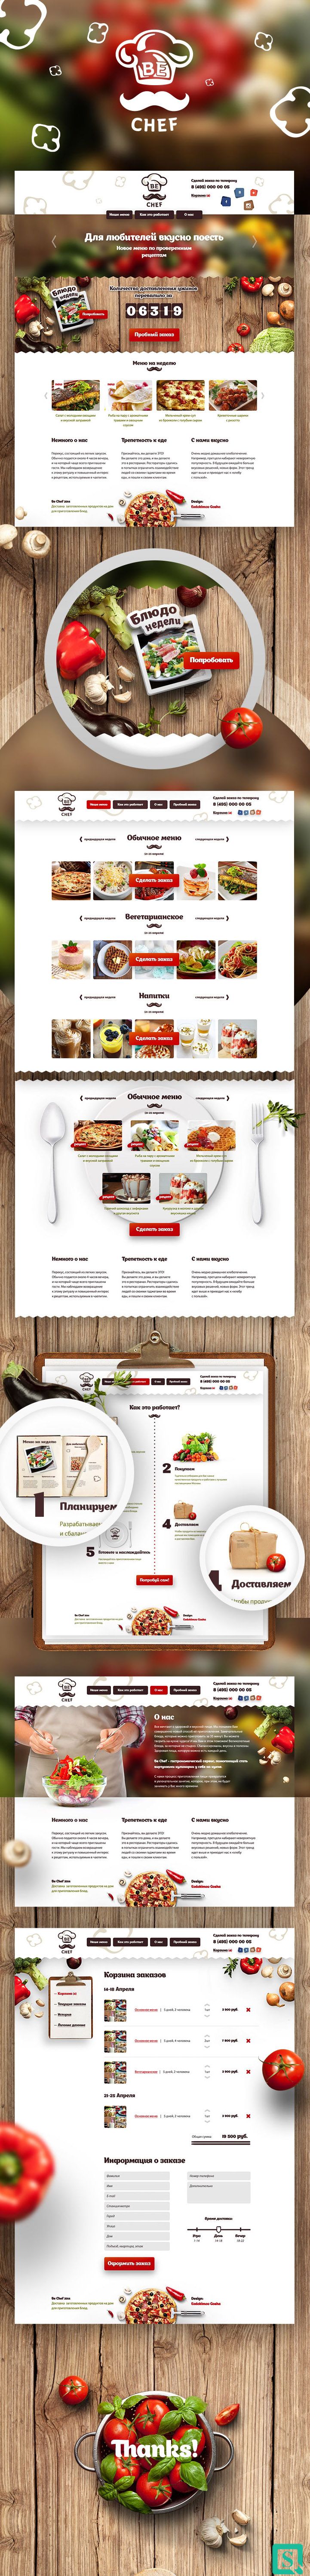 西餐美食 西安网页设计